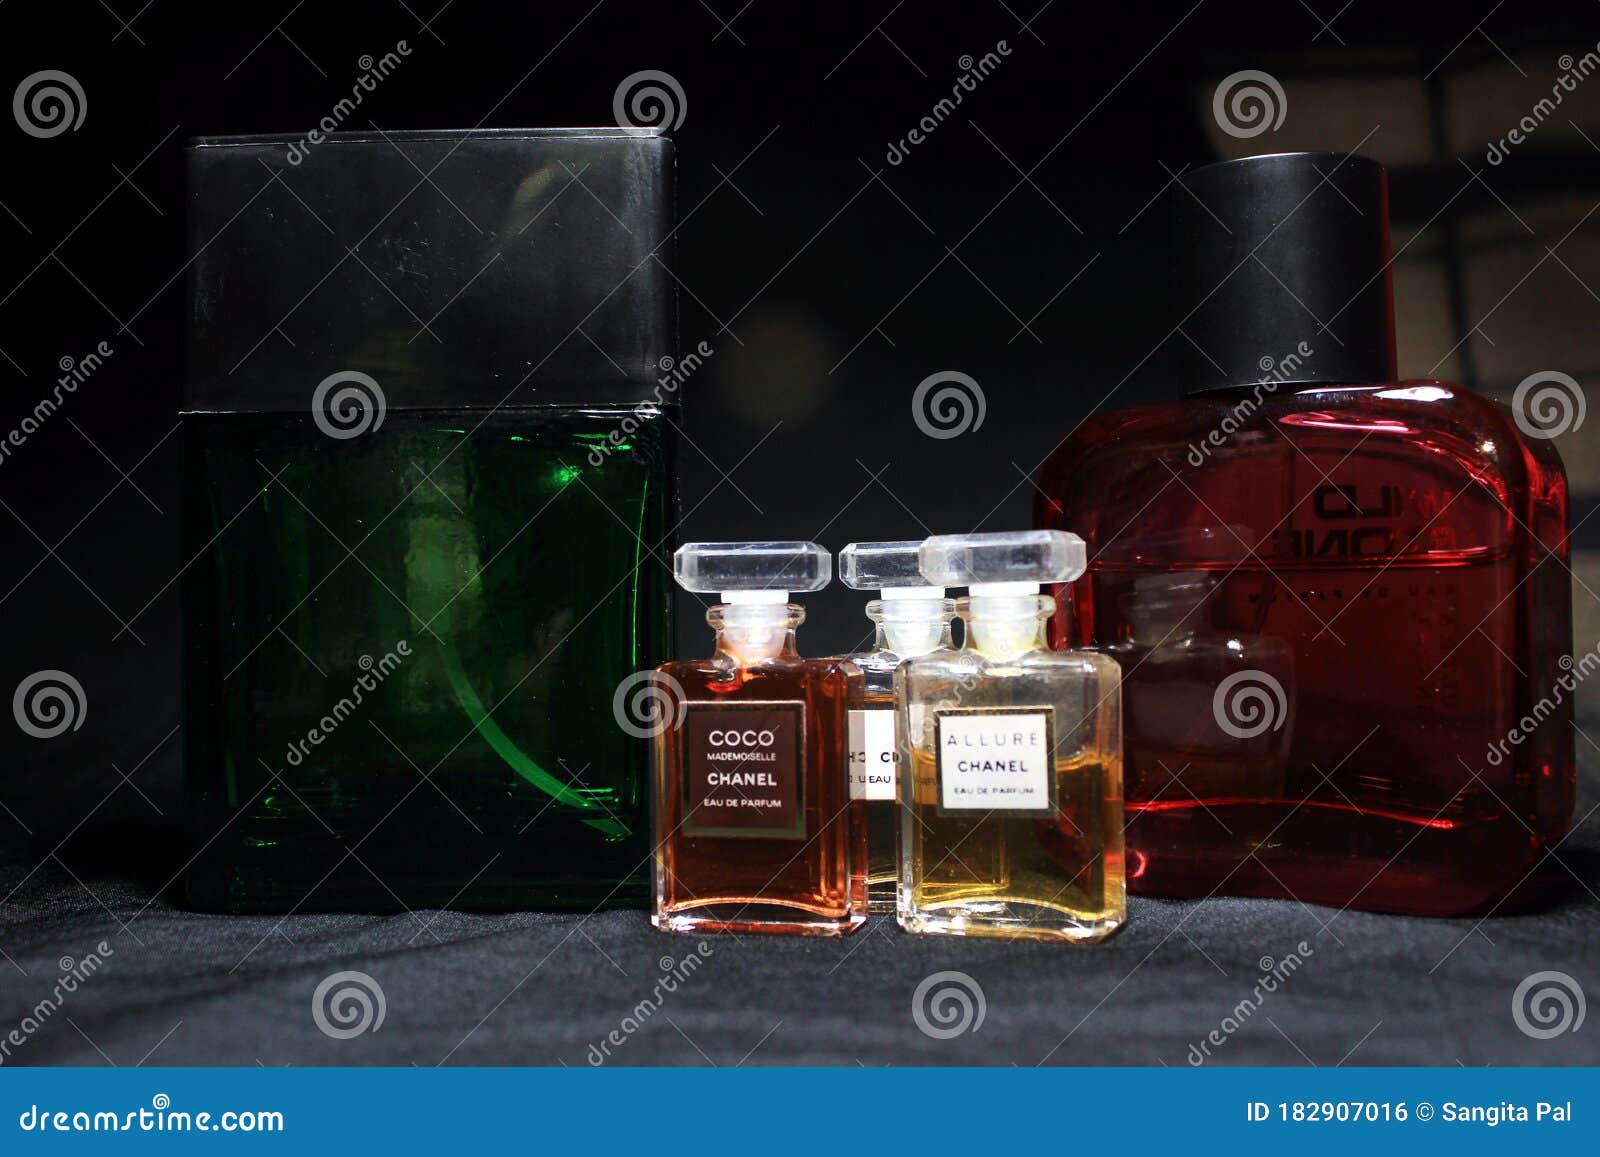 Chanel Perfume & Wild Stone Bottles Isolated on Black Background